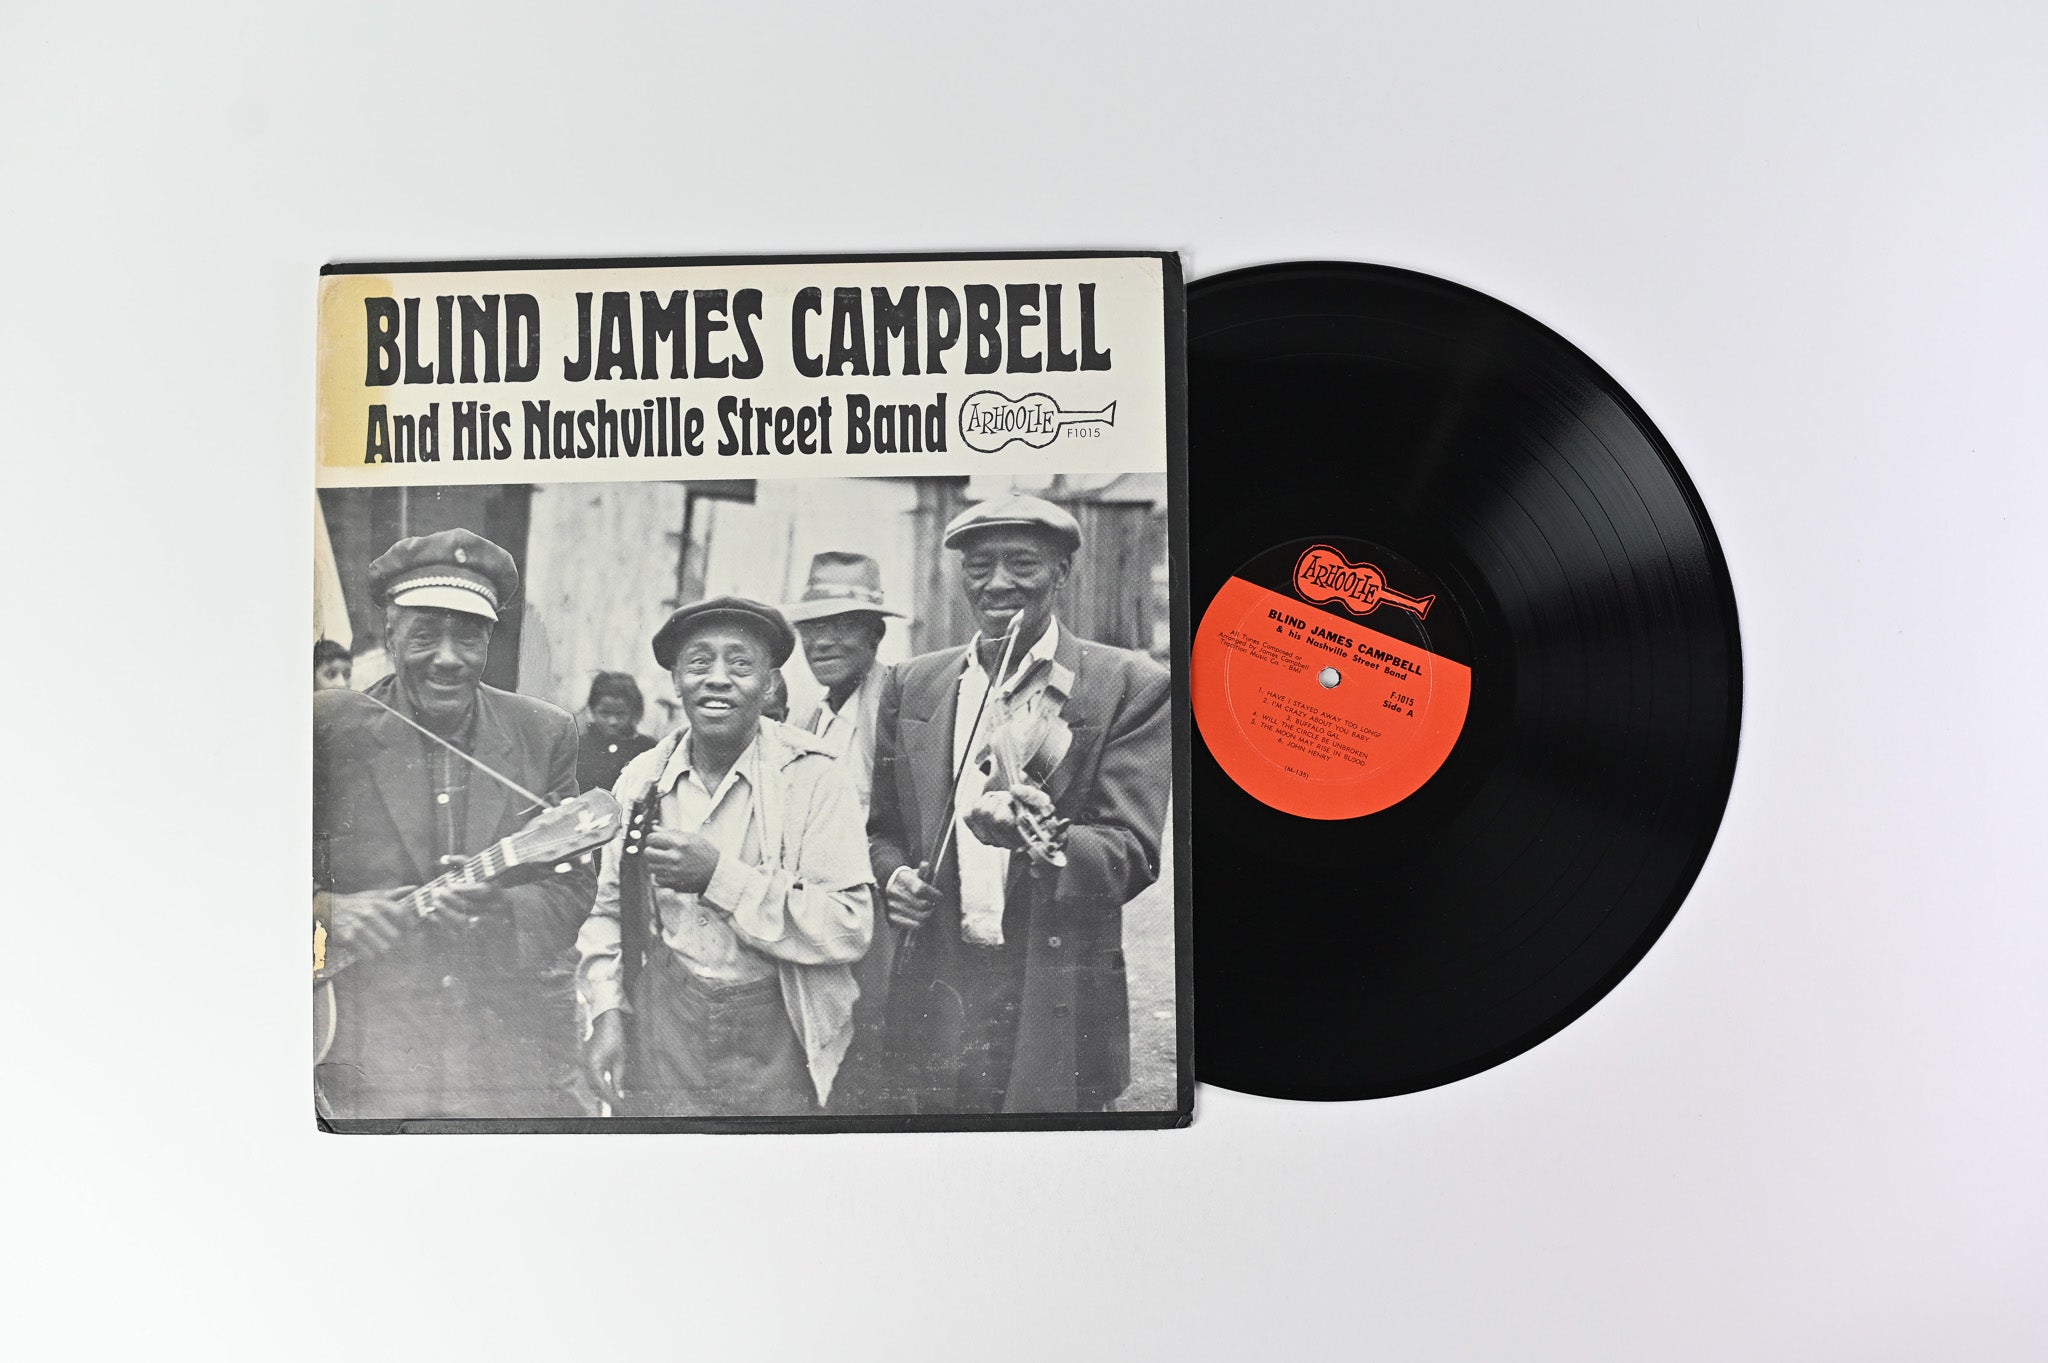 Blind James Campbell - Blind James Campbell And His Nashville Street Band on Arhoolie